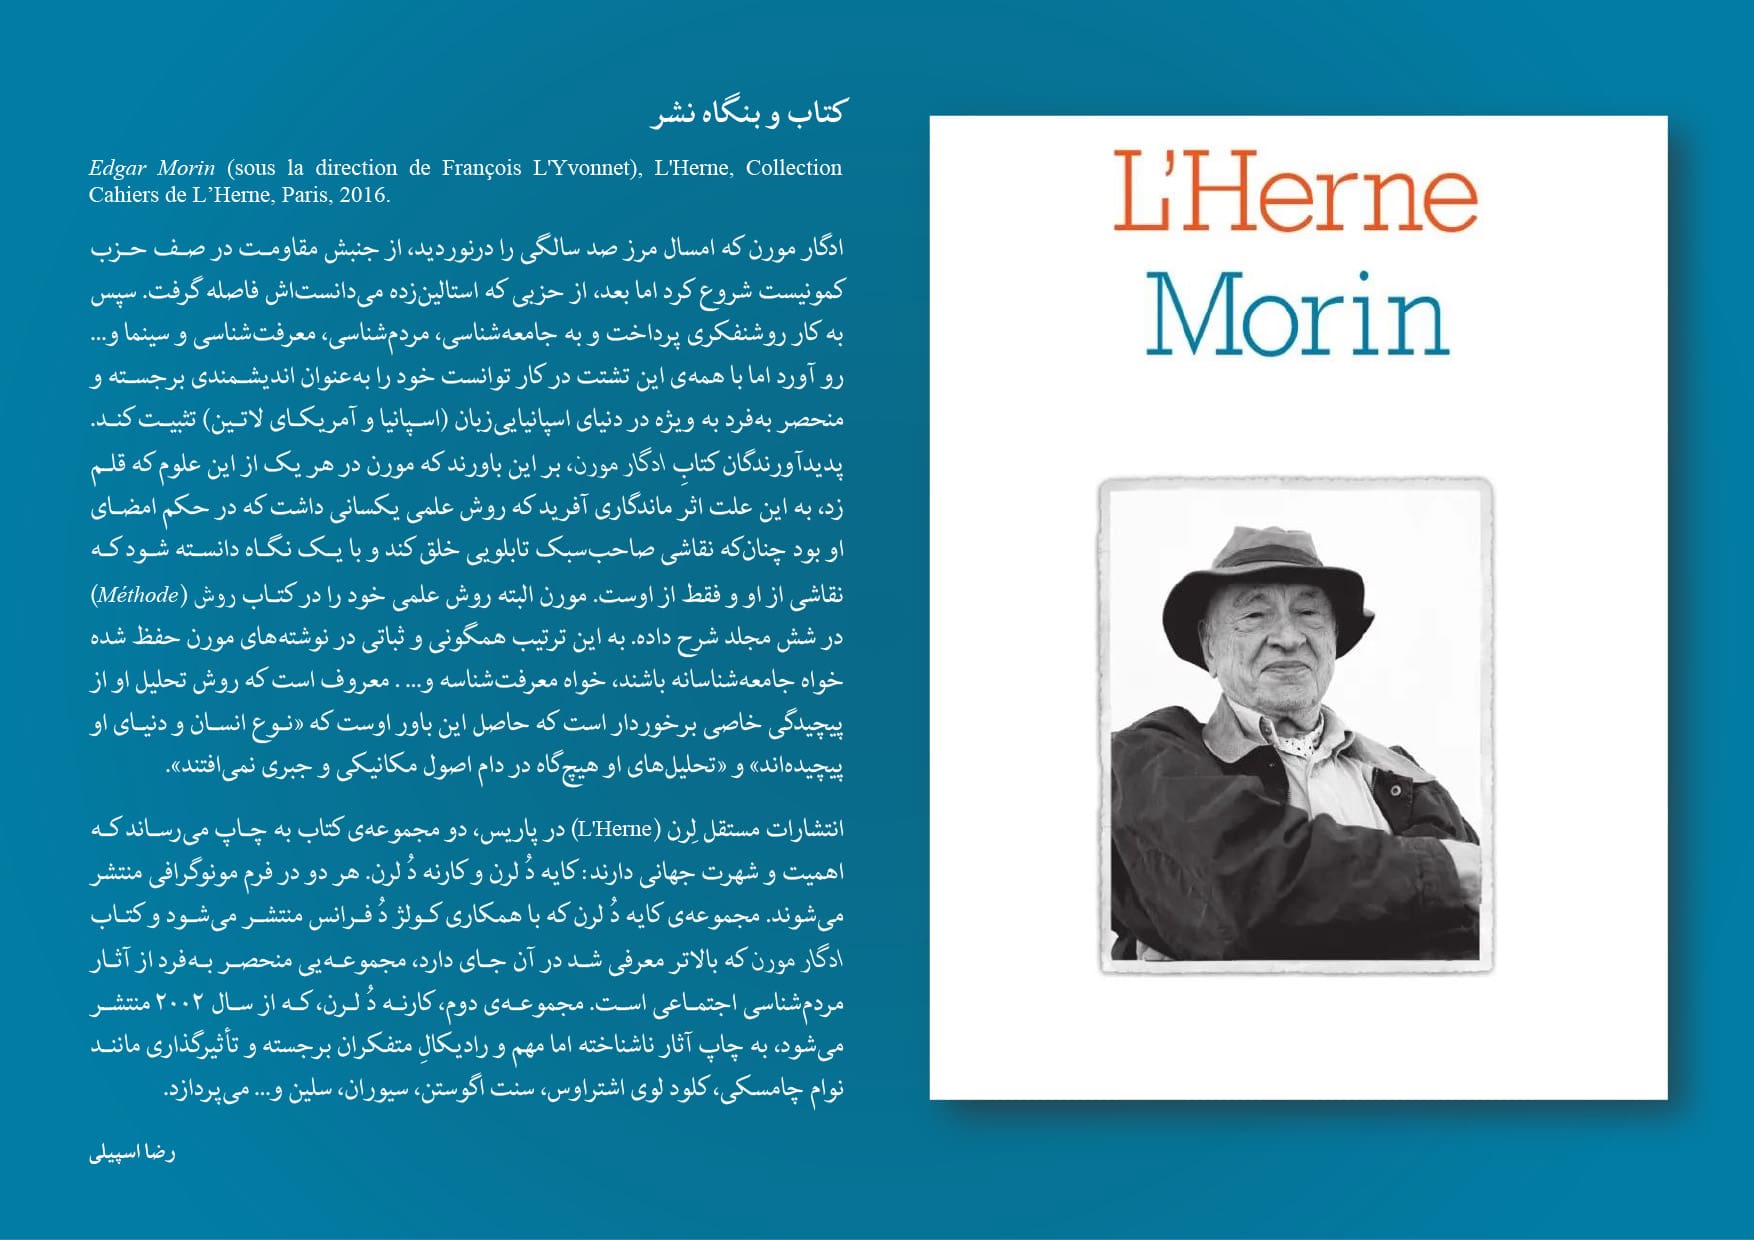 ادگار مورن و کتابی درباره‌ی او از مجموعه‌ی کایه دُ لرن متعلق به انتشارات مستقل لرن L'Herne